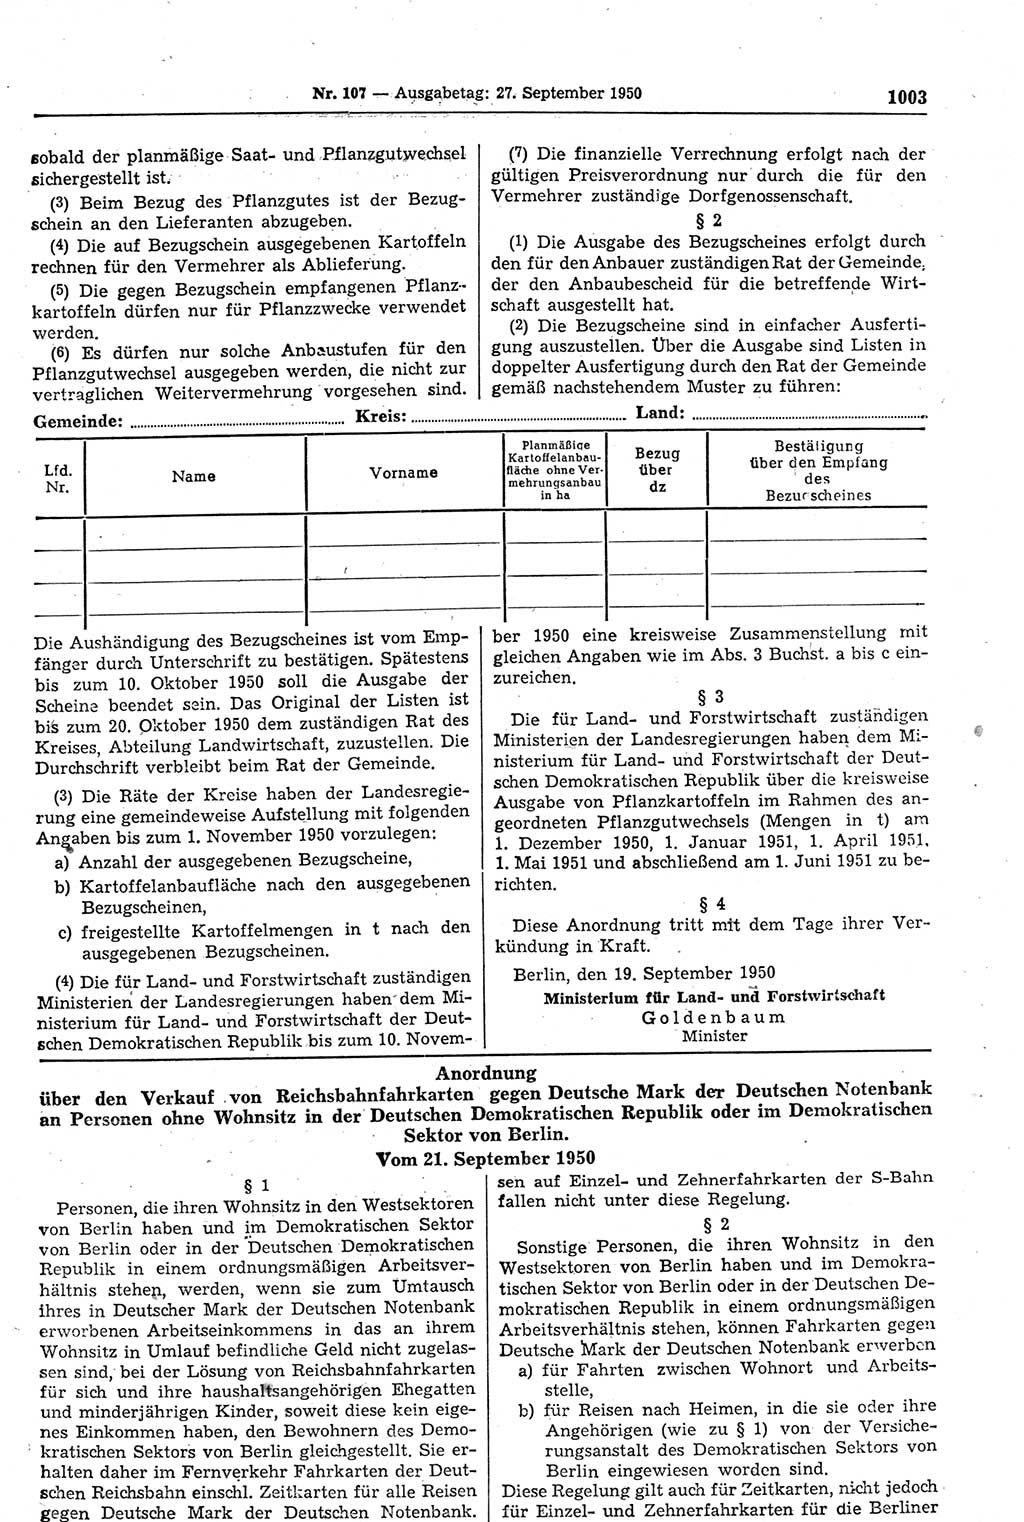 Gesetzblatt (GBl.) der Deutschen Demokratischen Republik (DDR) 1950, Seite 1003 (GBl. DDR 1950, S. 1003)